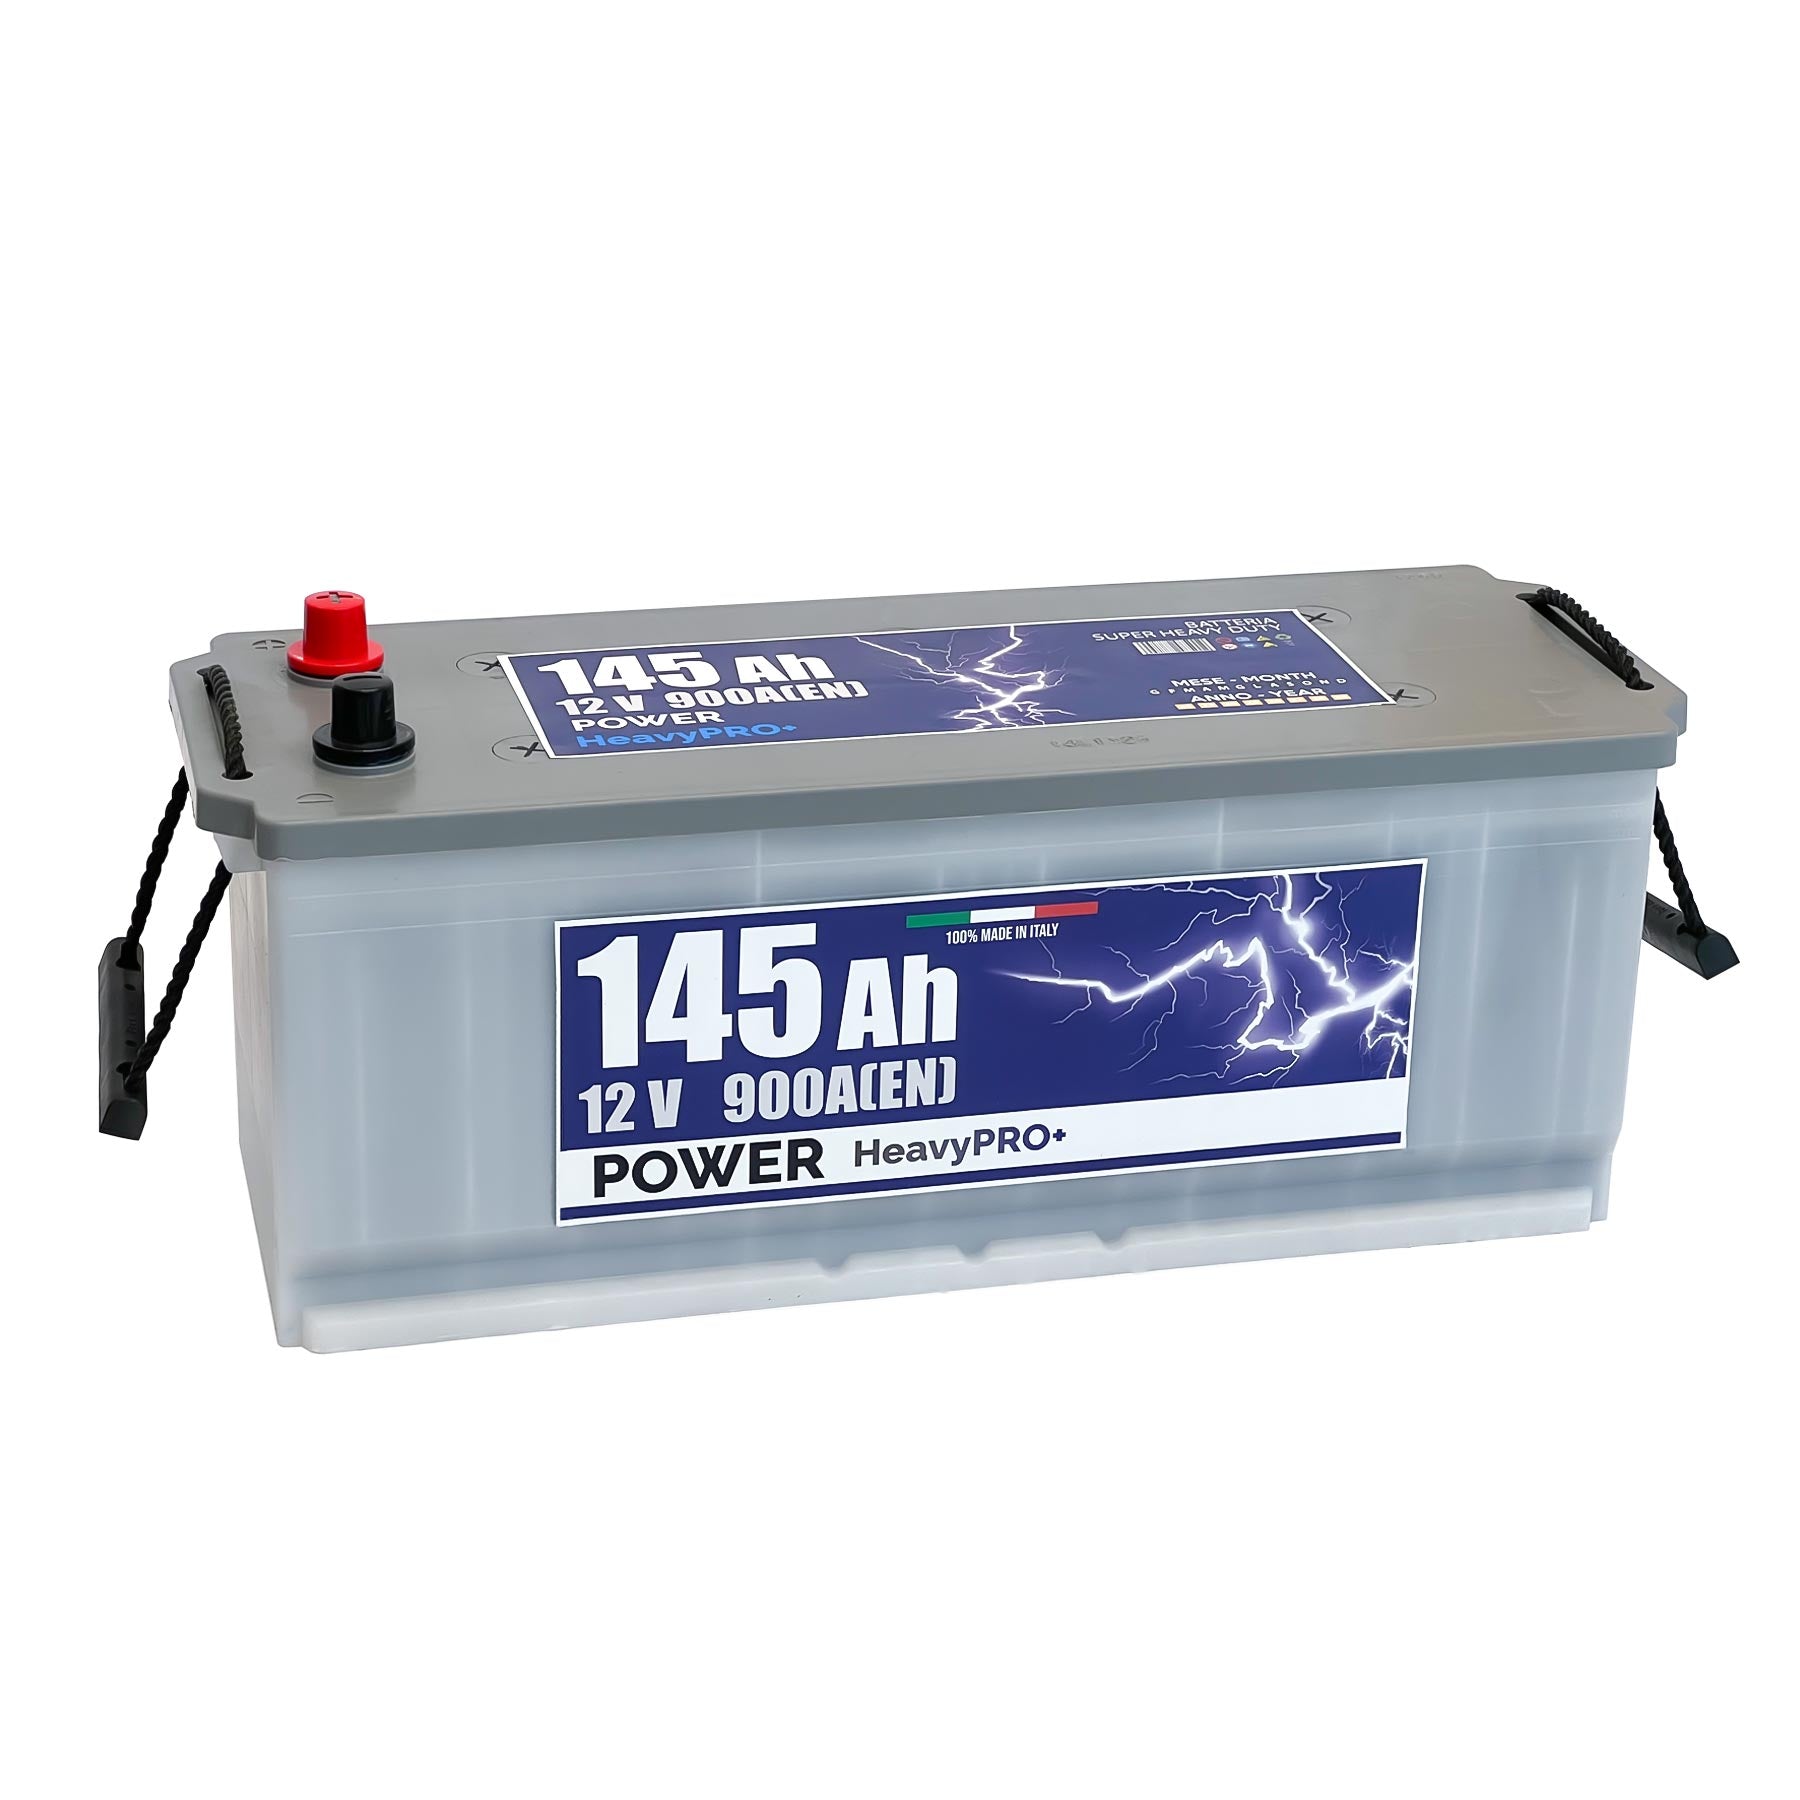 Batteria Power 53211 - Garden (12V, 35h, 350A) - Puntobatterie